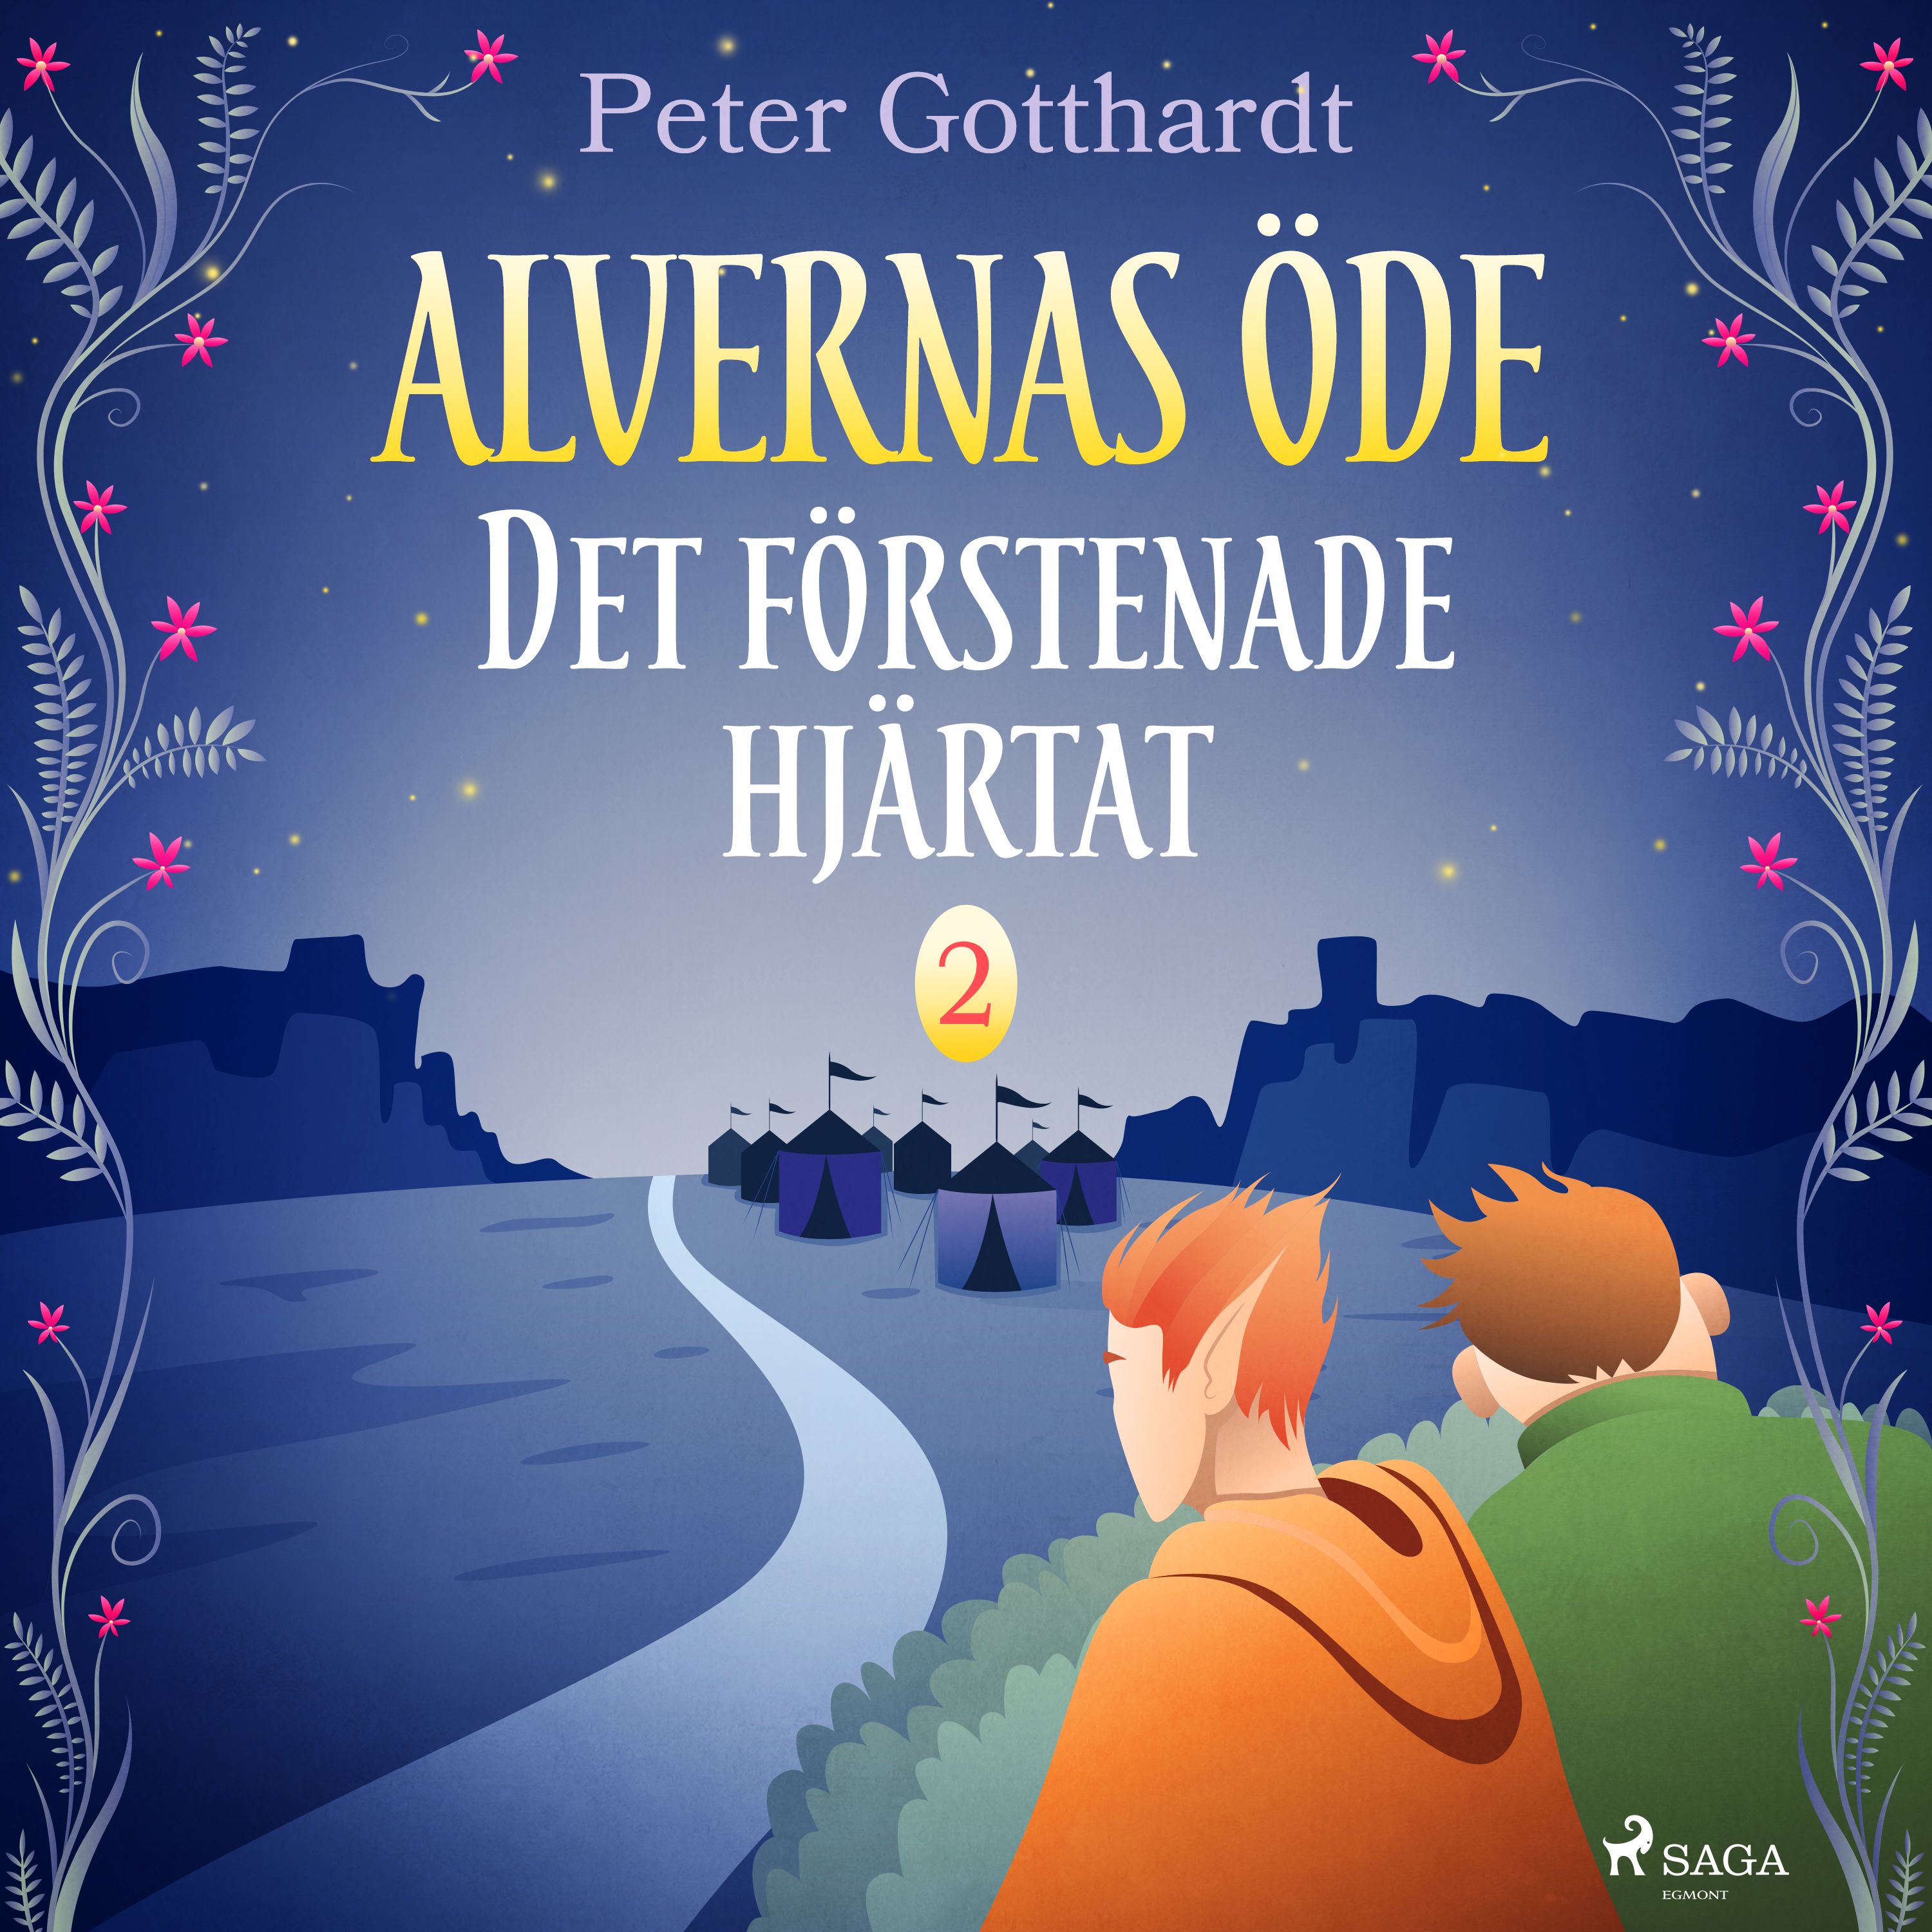 Alvernas öde 2: Det förstenade hjärtat, audiobook by Peter Gotthardt